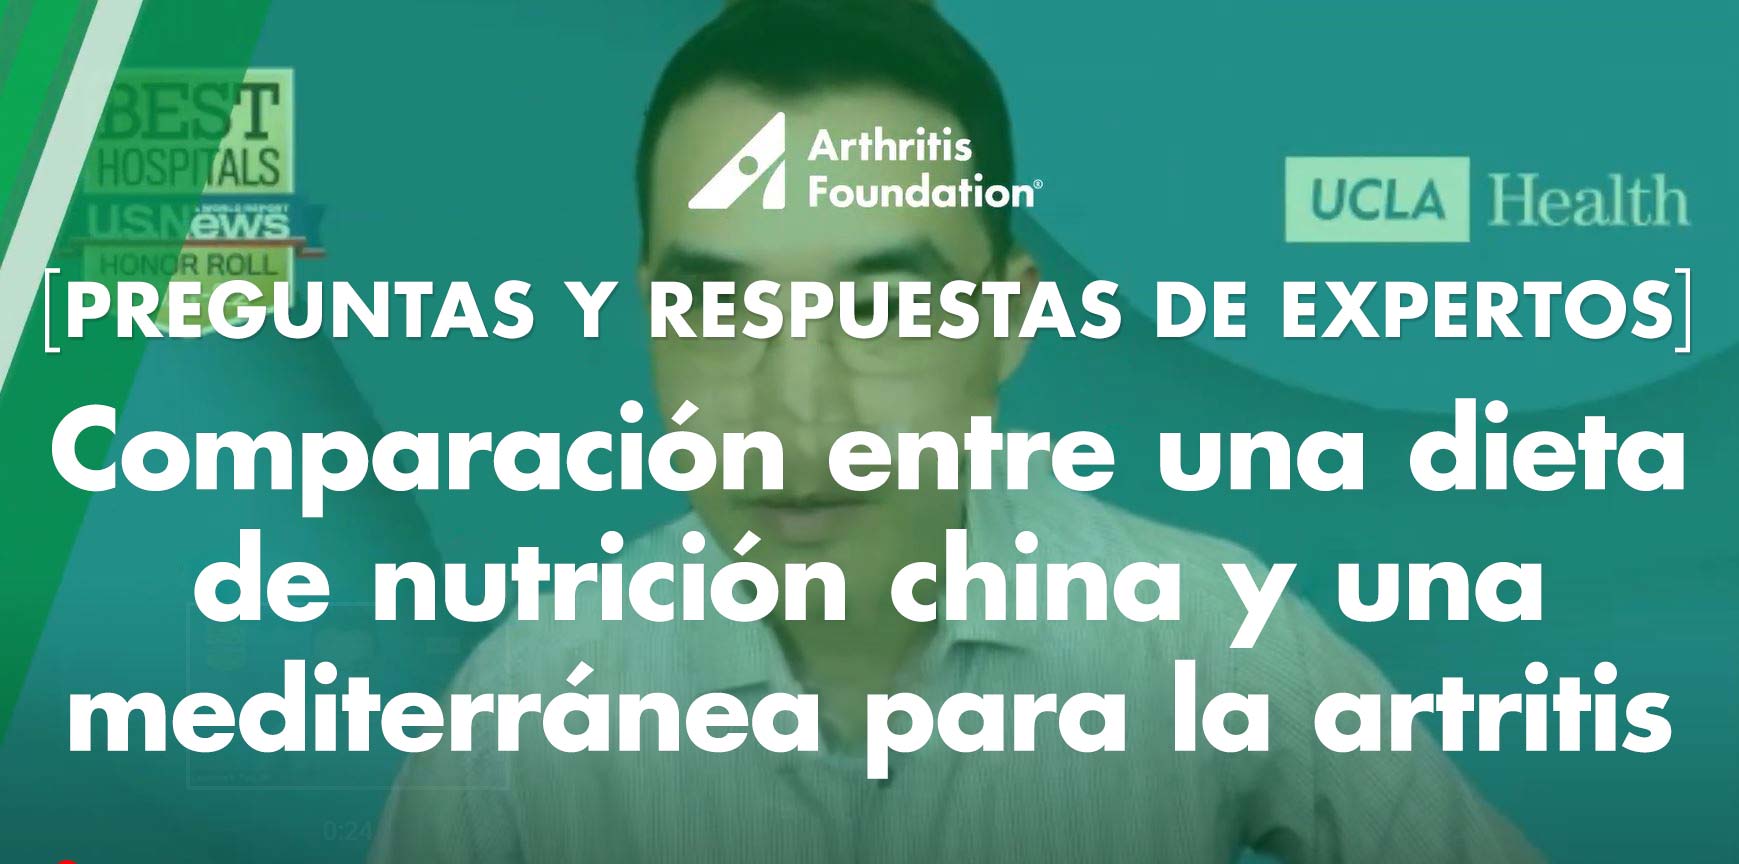 Preguntas y respuestas de expertos: Comparación entre una dieta de nutrición china y la dieta mediterránea para la artritis